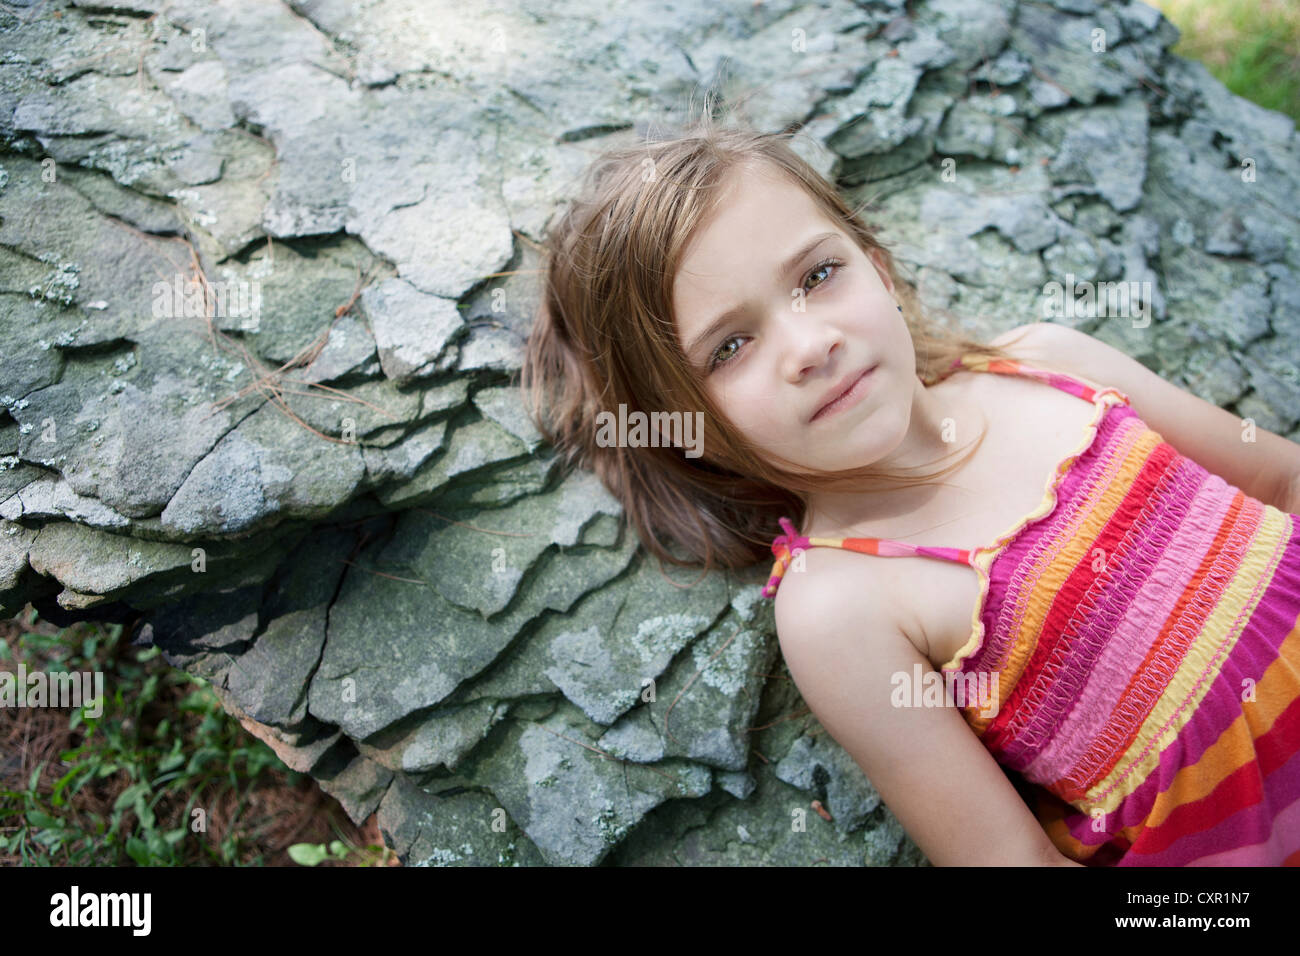 Girl lying on rocks Stock Photo